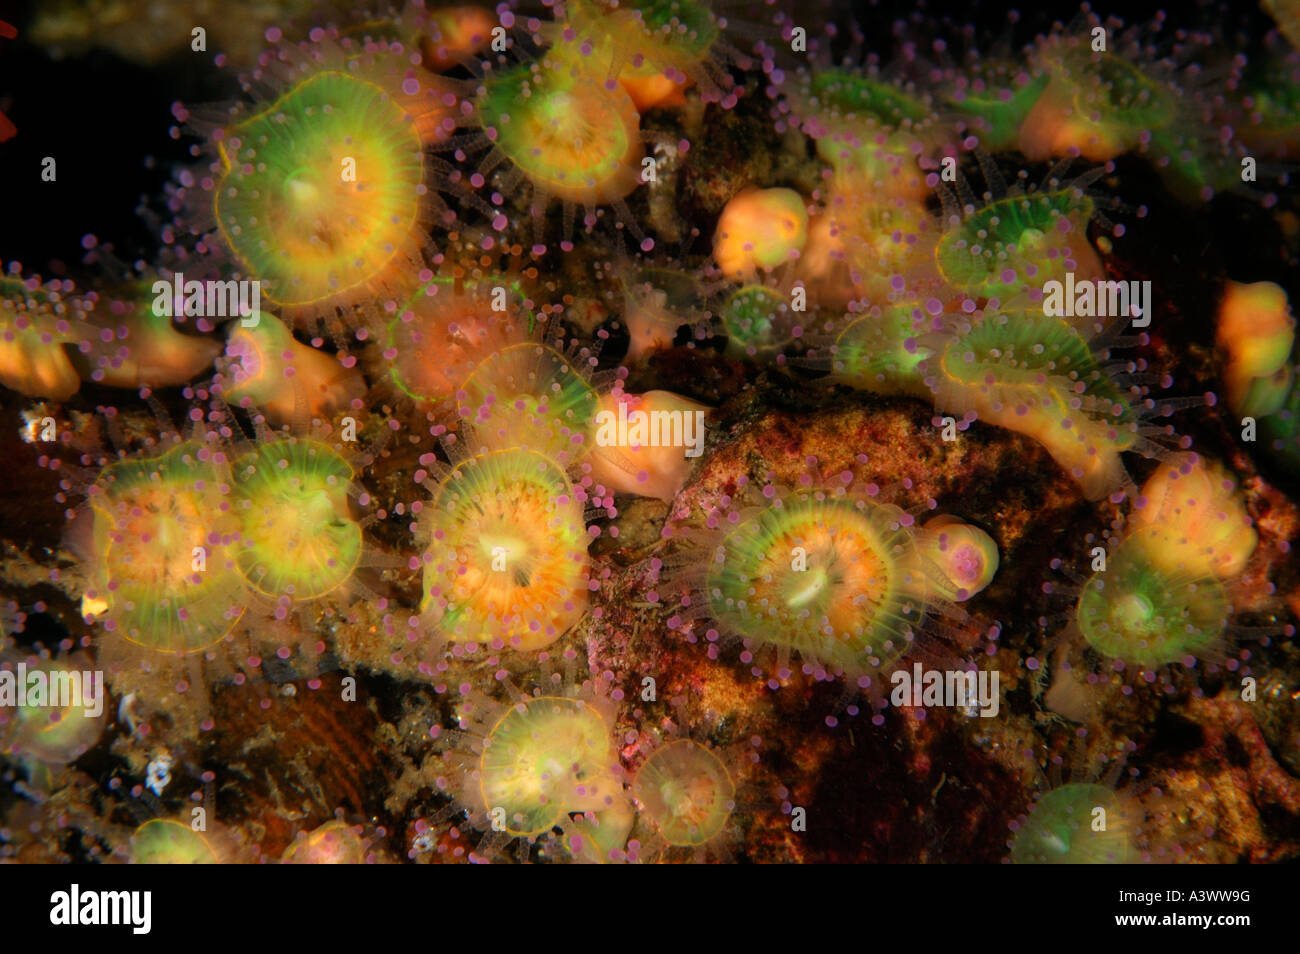 Juwelen Sie-Anenome Corynactis Viridis häufig in klaren gemäßigten Meeren gefunden in Süd-West-UK Stockfoto